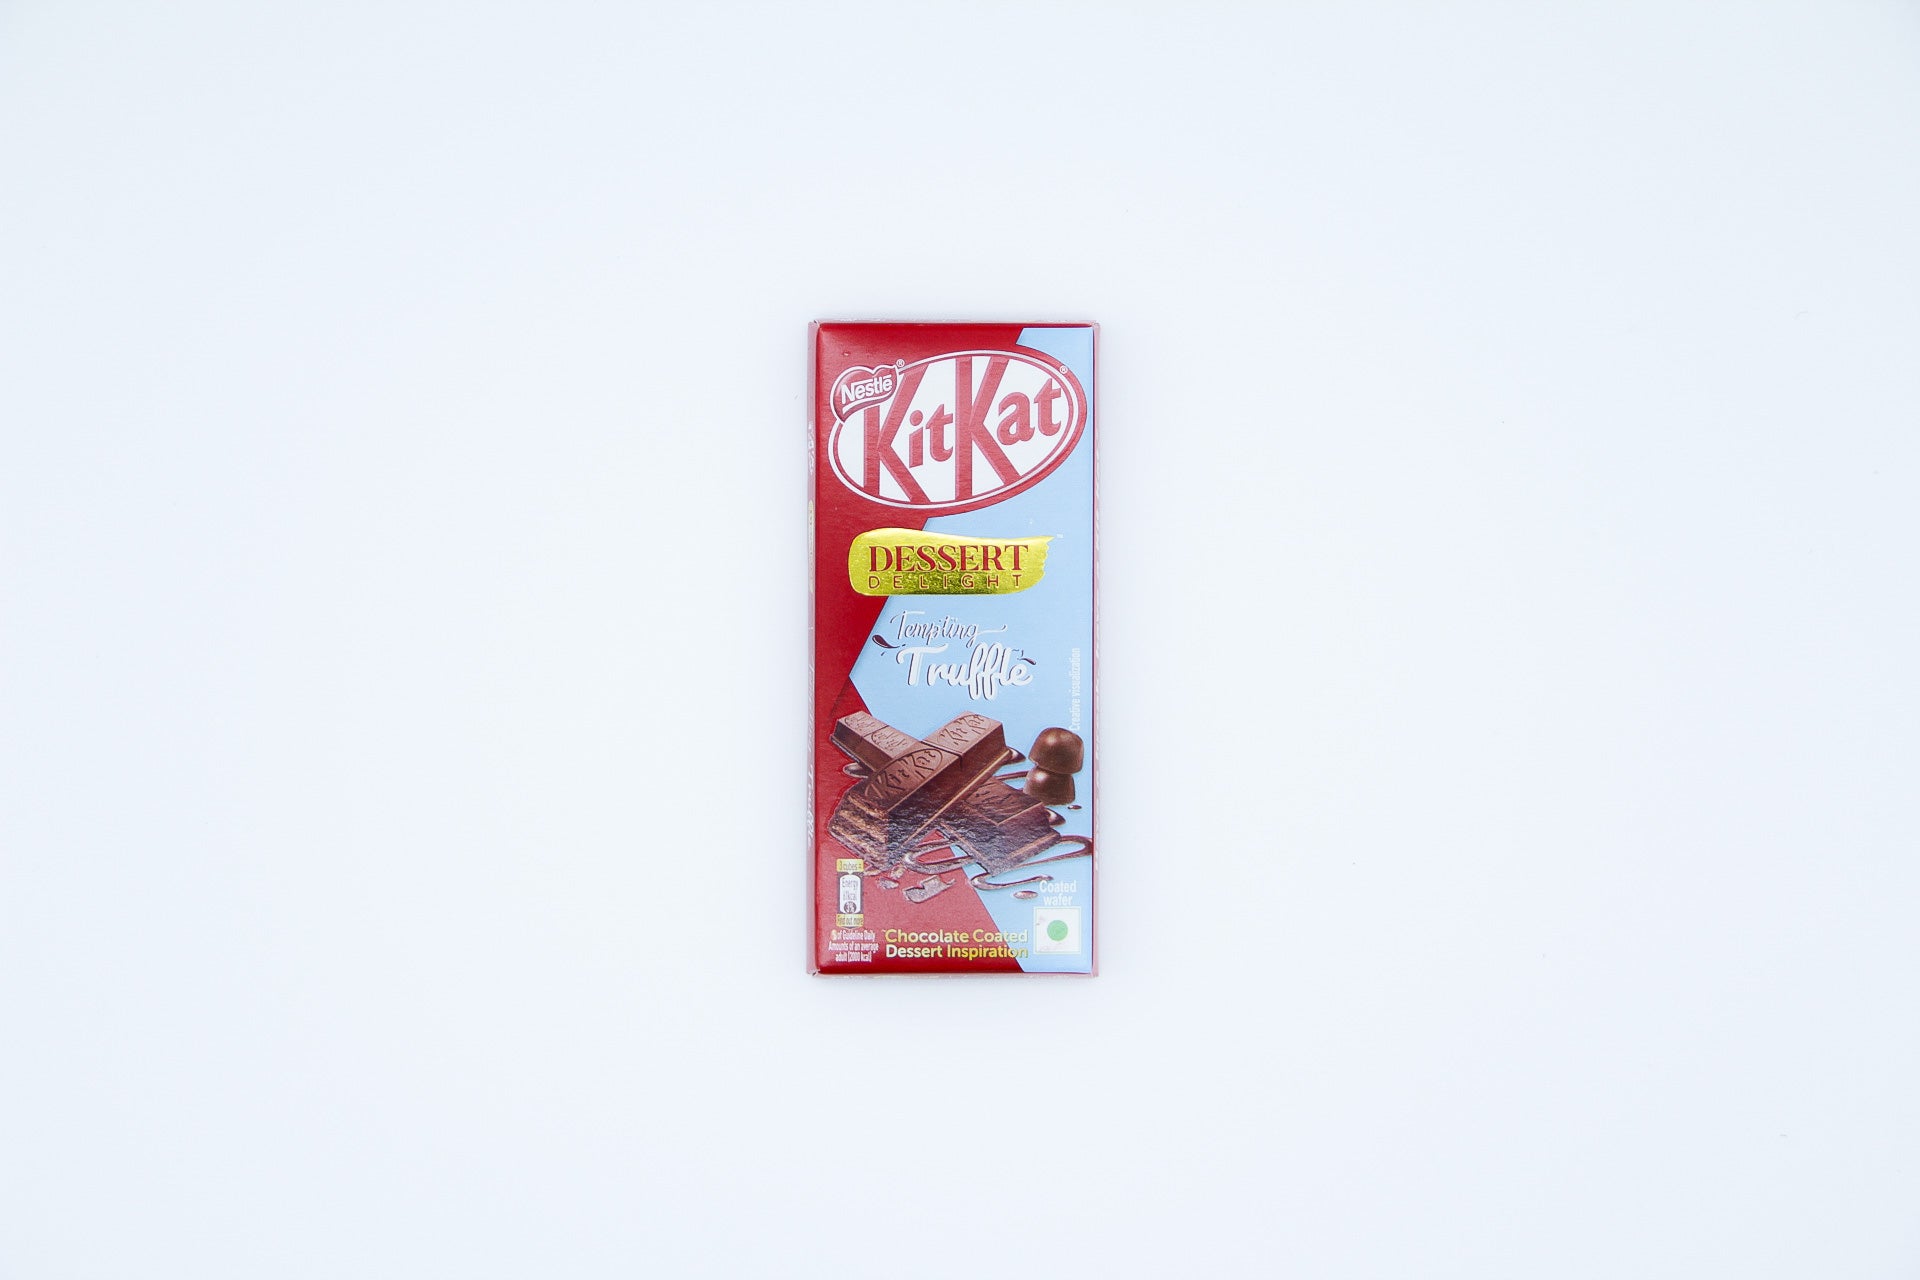 Kitkat Temptation Truffle Flavor